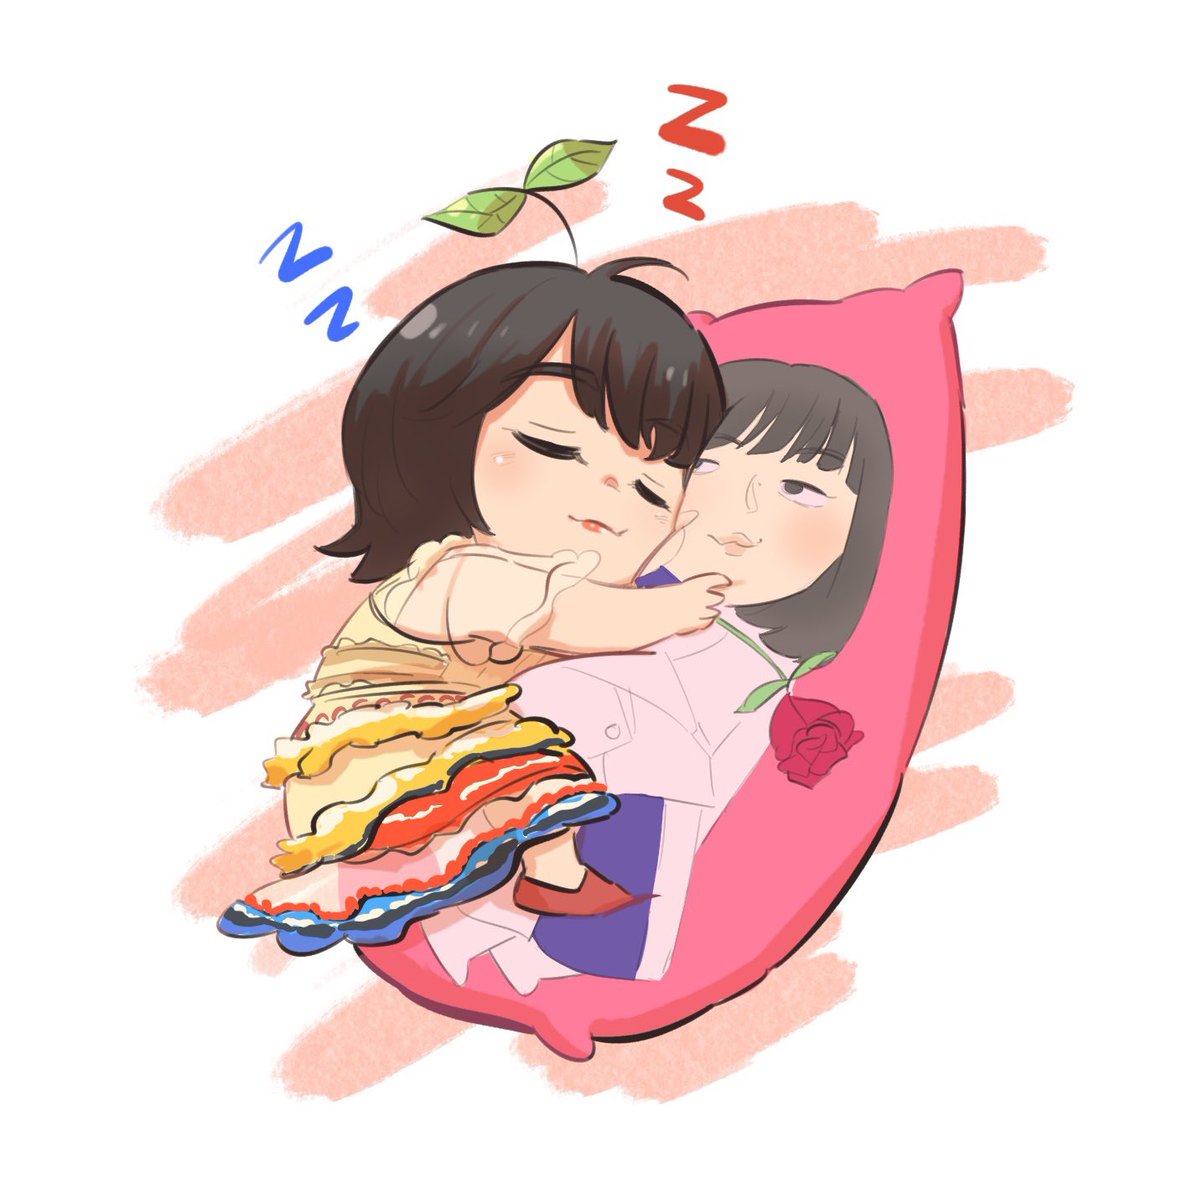 「キラ子抱き枕といっしょに寝ようね#hikarutalk #森田ひかる #増本綺良」|アイスさん🍦◢มัมหมีพี่โฮโนะ🧸กับน้องริโกะ🐶のイラスト